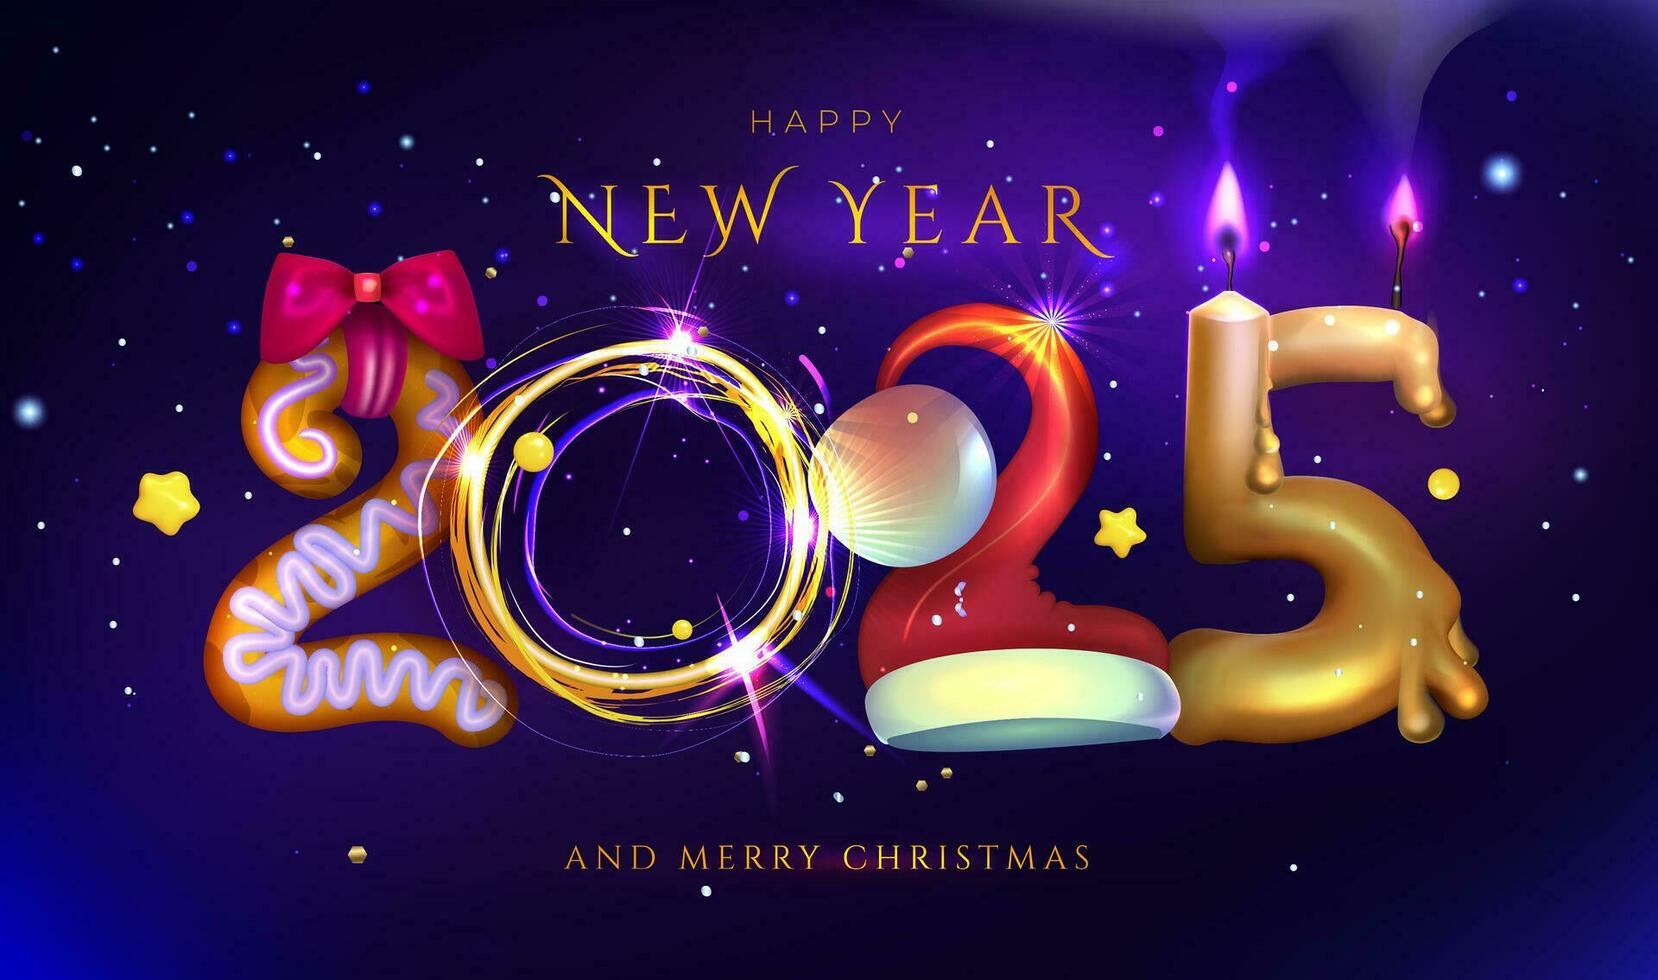 contento nuevo año y alegre Navidad 2025 vector ilustración de velas, papel picado, luces y galletas. eps 10